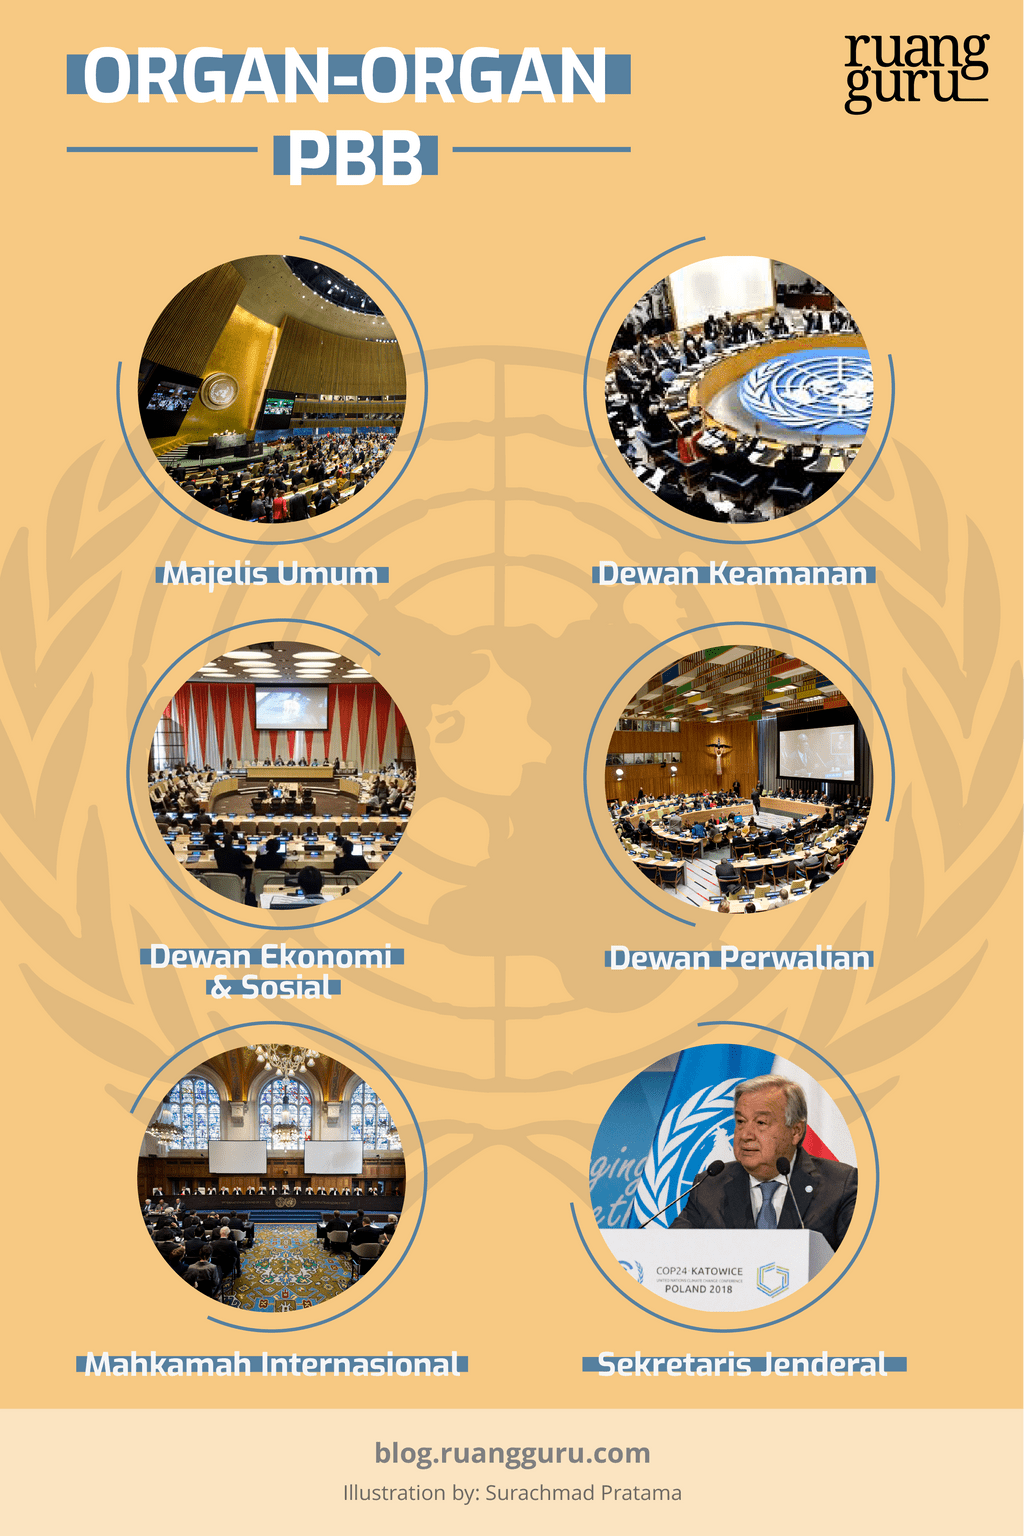 Ogran-organ Perserikatan Bangsa-Bangsa